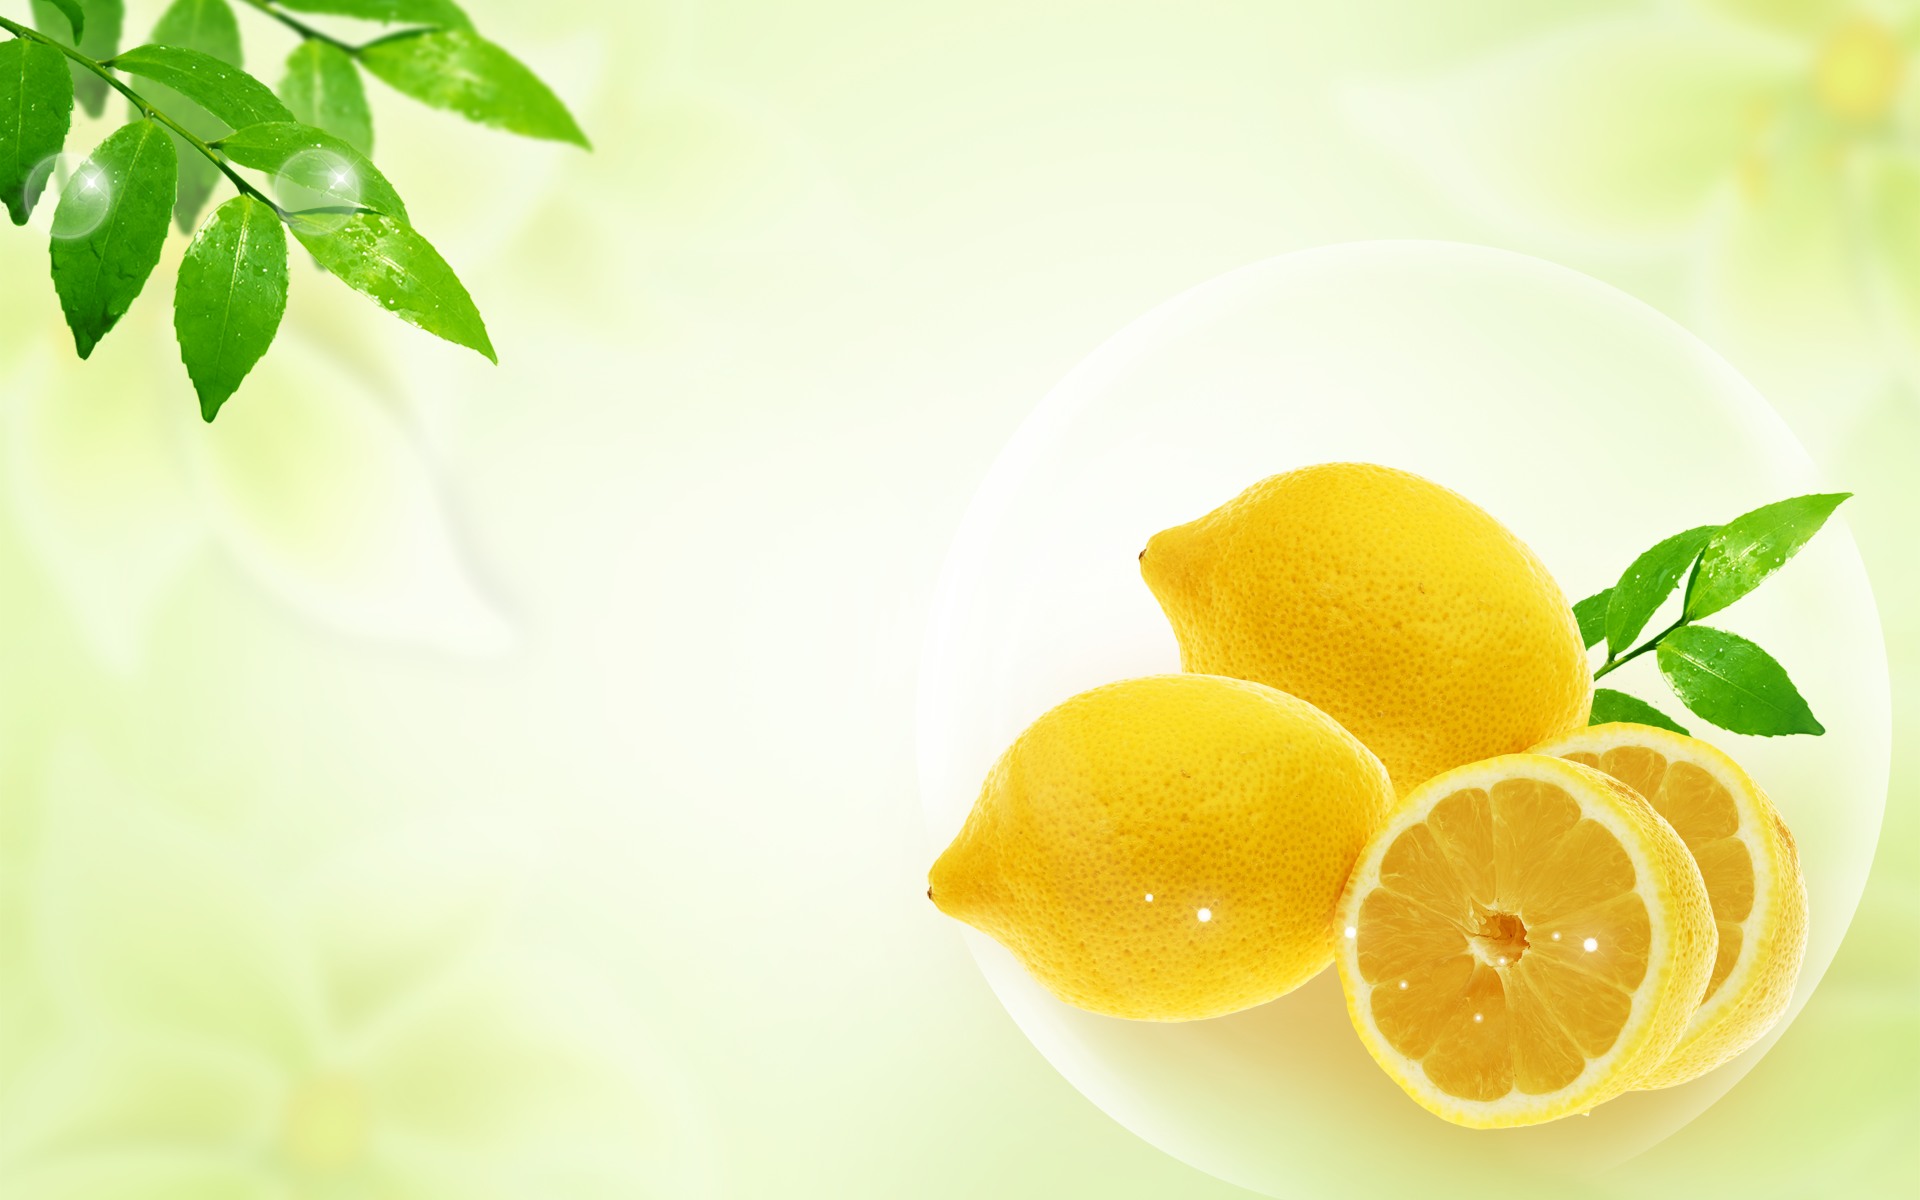 gambar buah lemon wallpaper hd